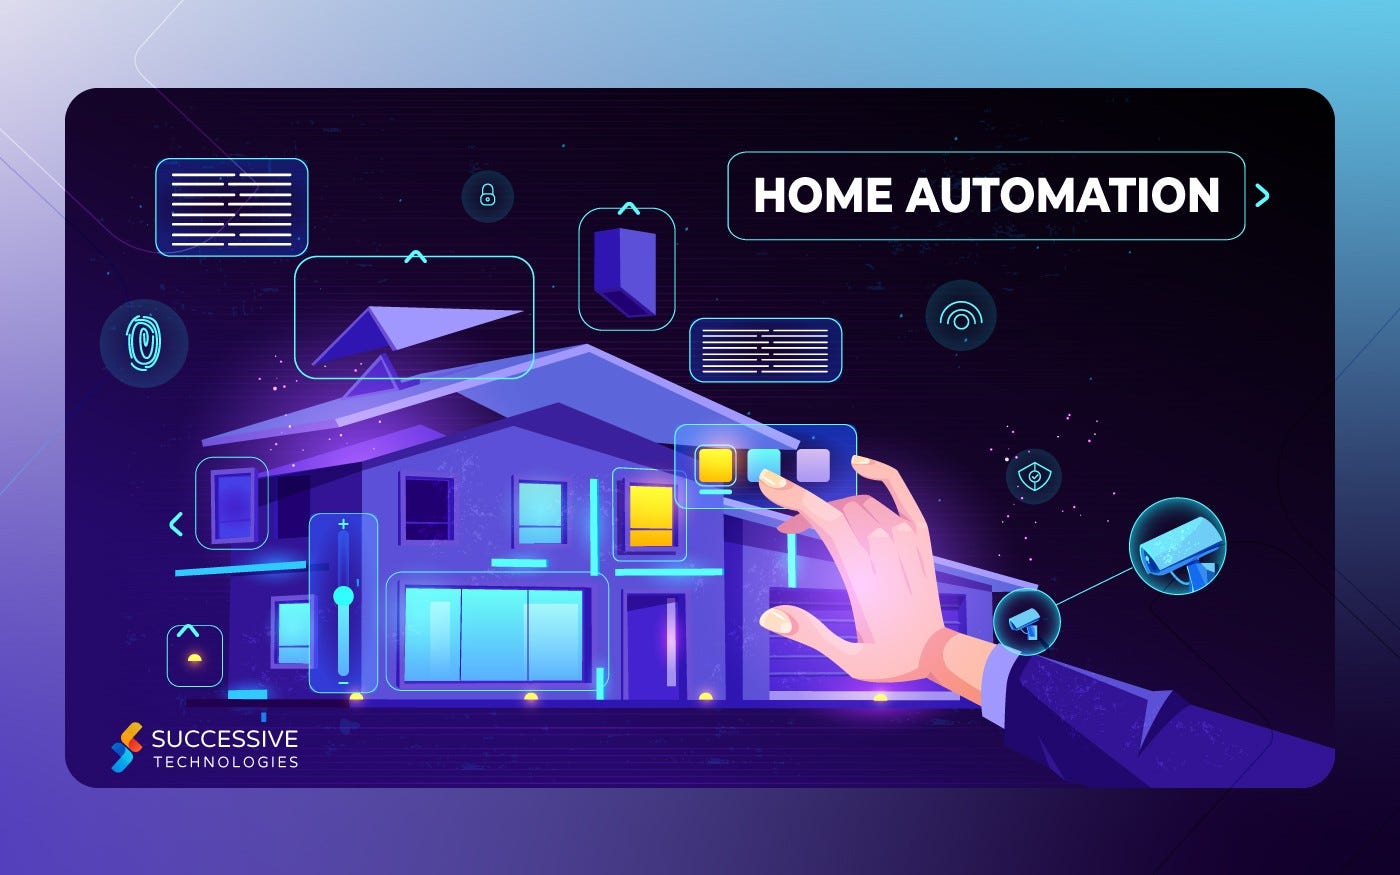 Home Automation Company